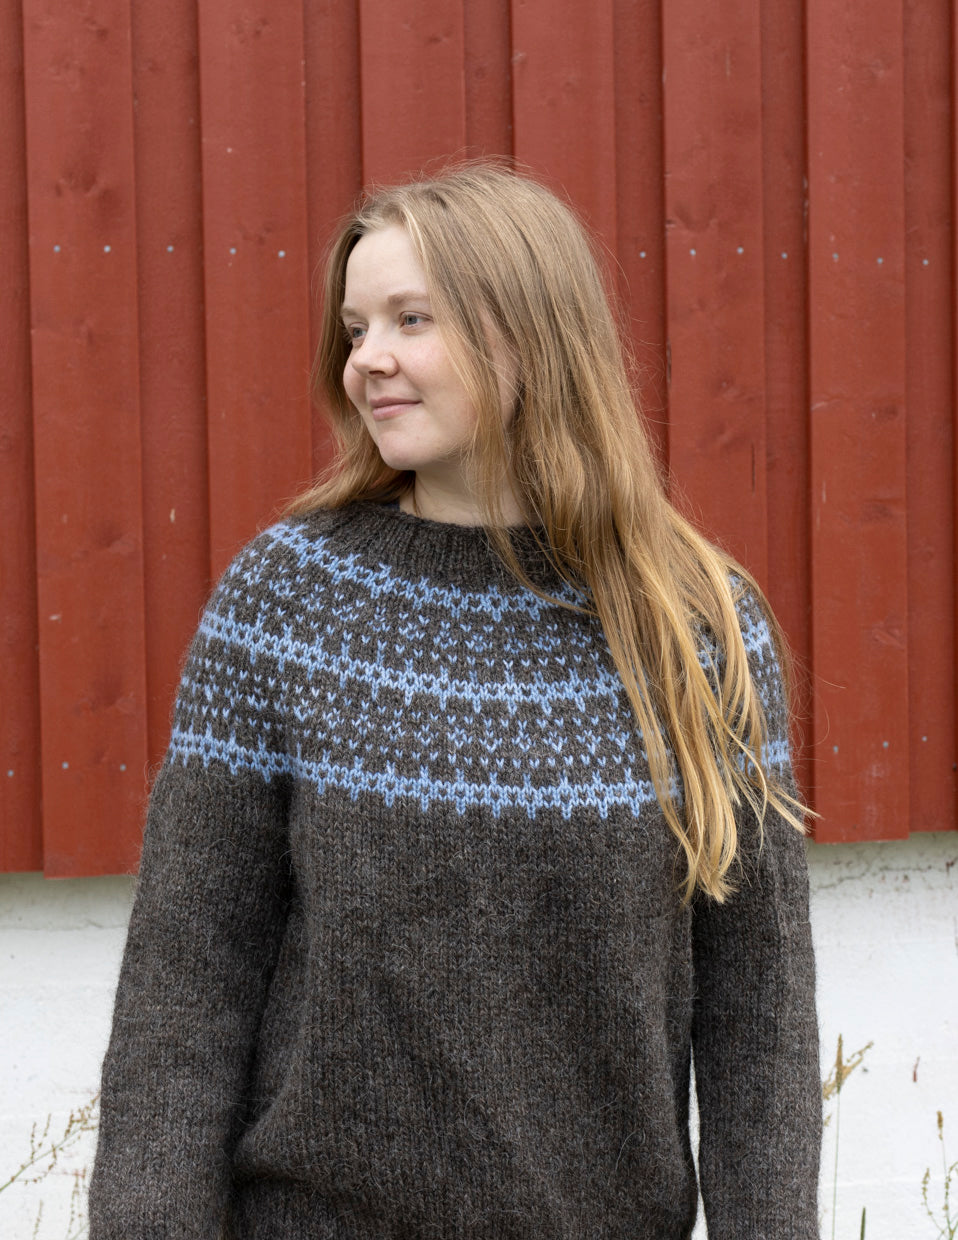 SALTY GRAINS, sweater knitting kit in Full Storm